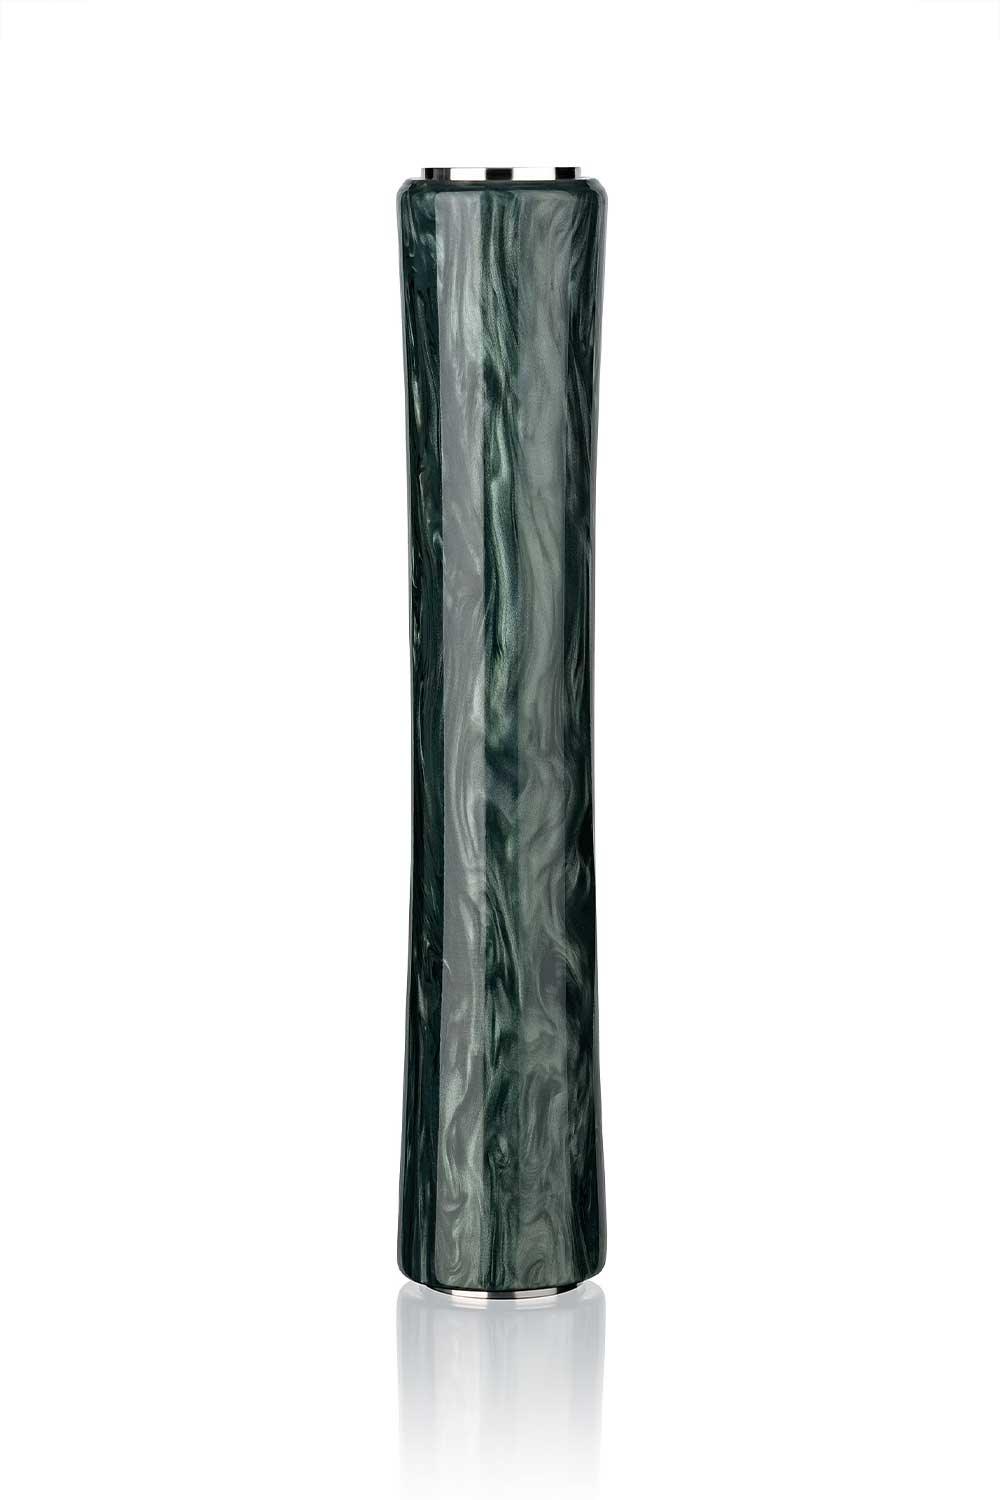 Steamulation Epoxid Marble Column Sleeve Big - Dark Green - shishagear - UK Shisha Hookah Black Friday